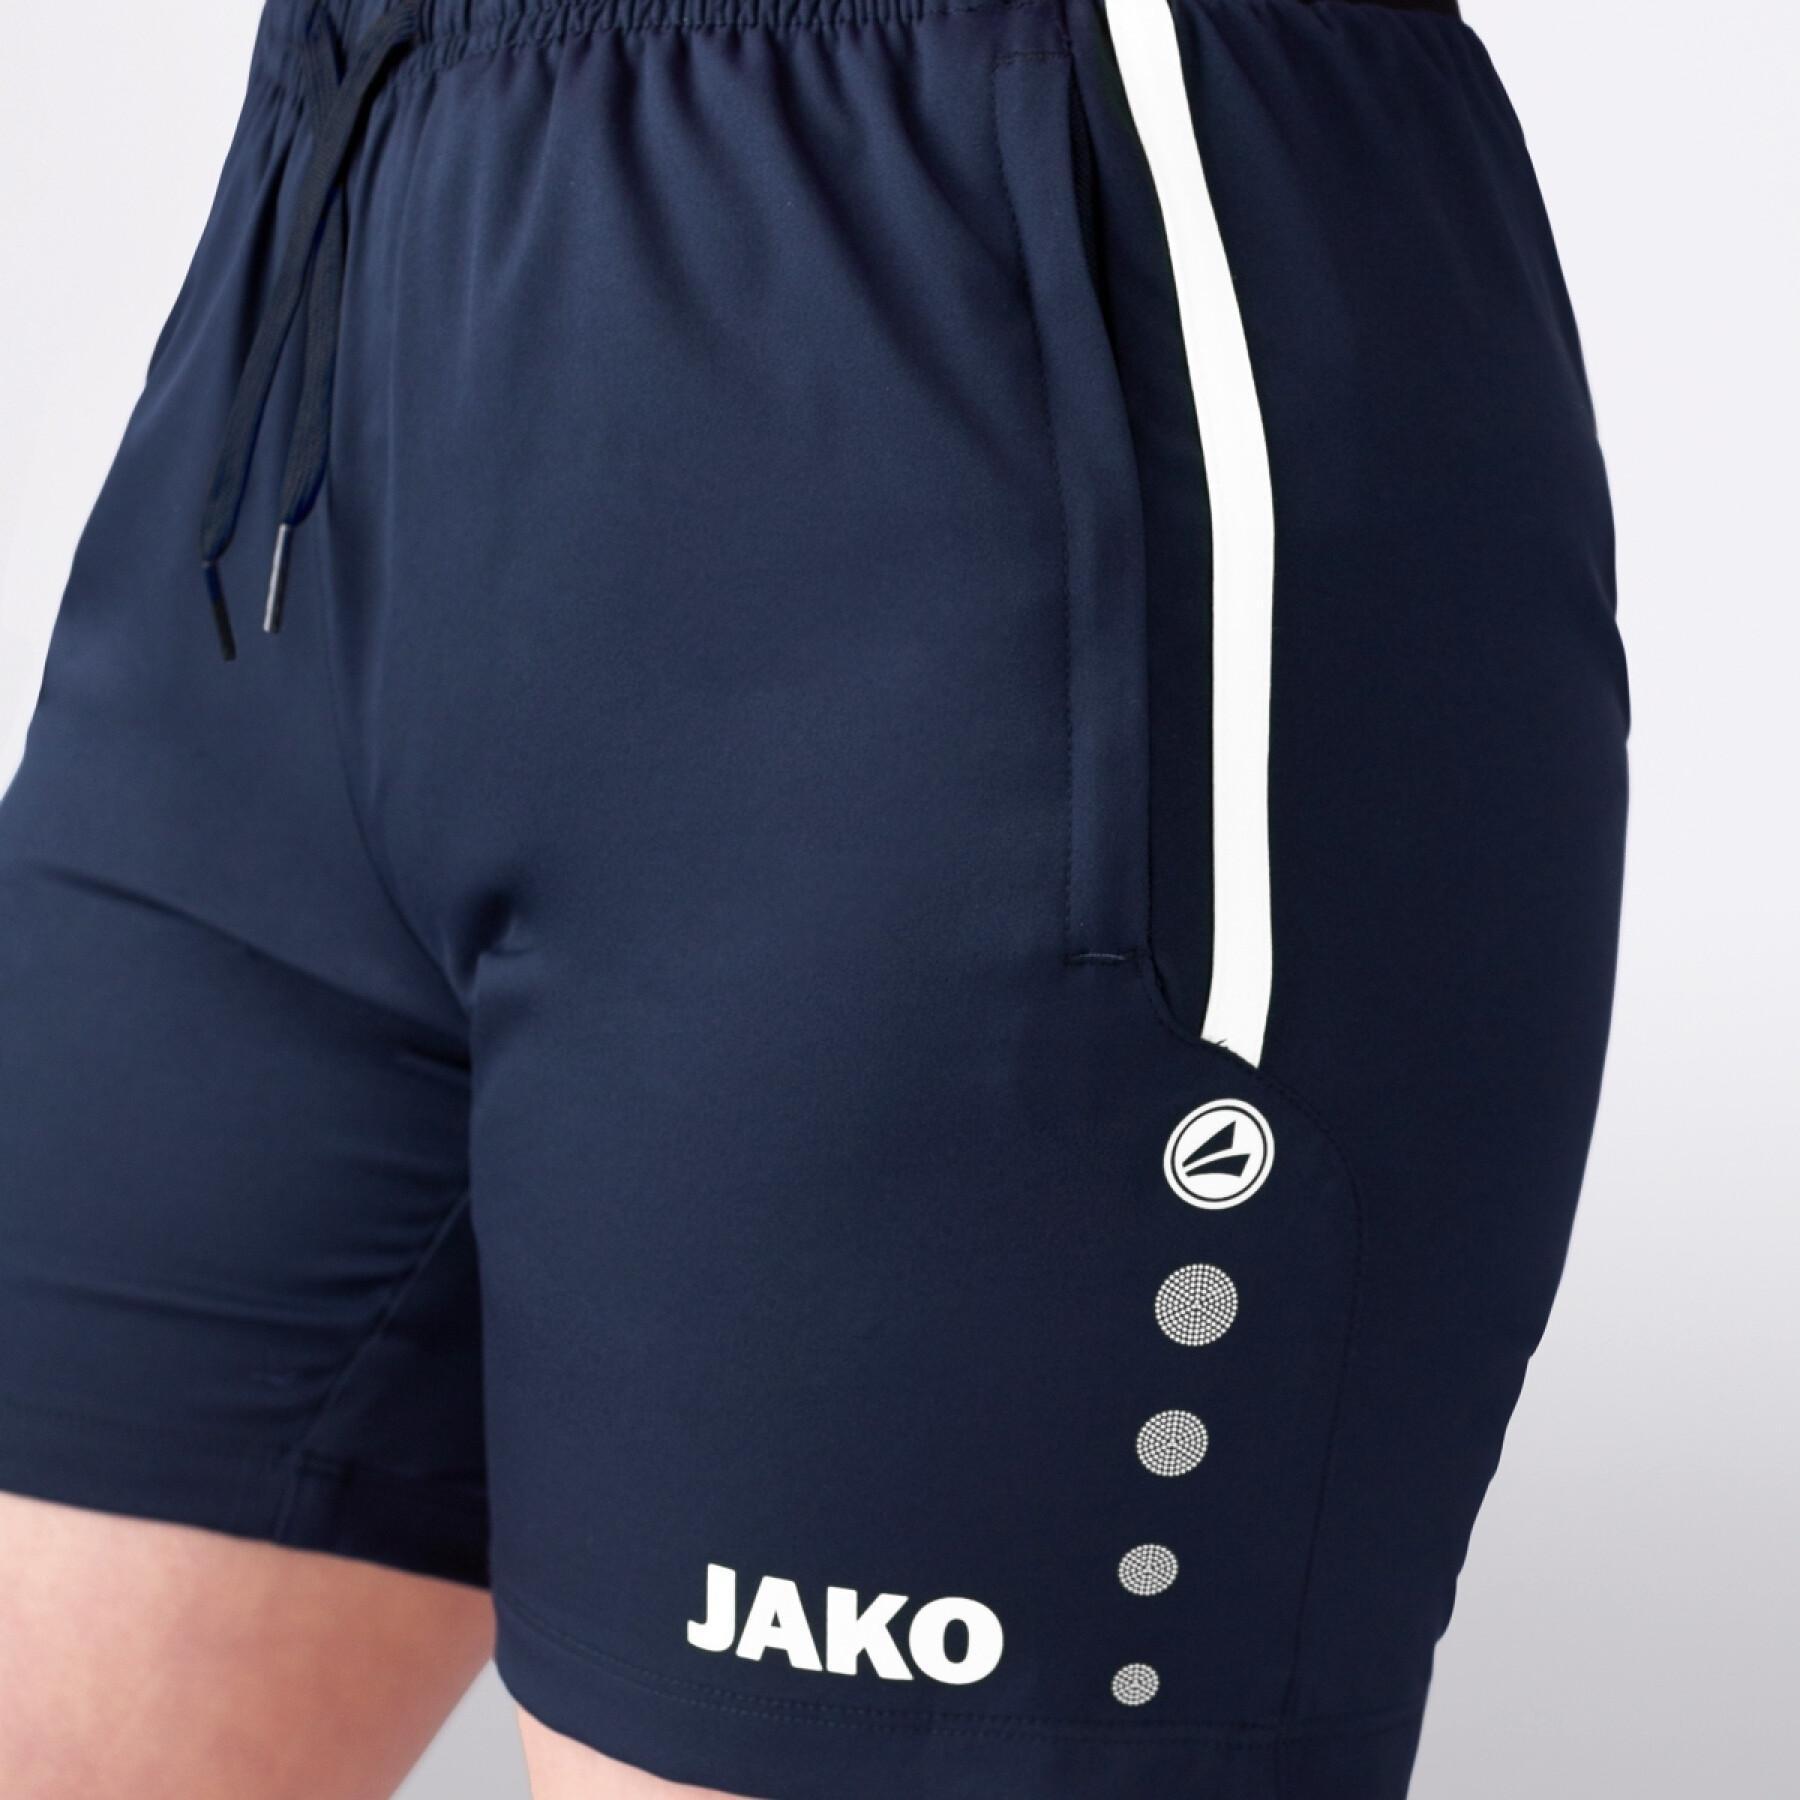 Children's shorts Jako Allround